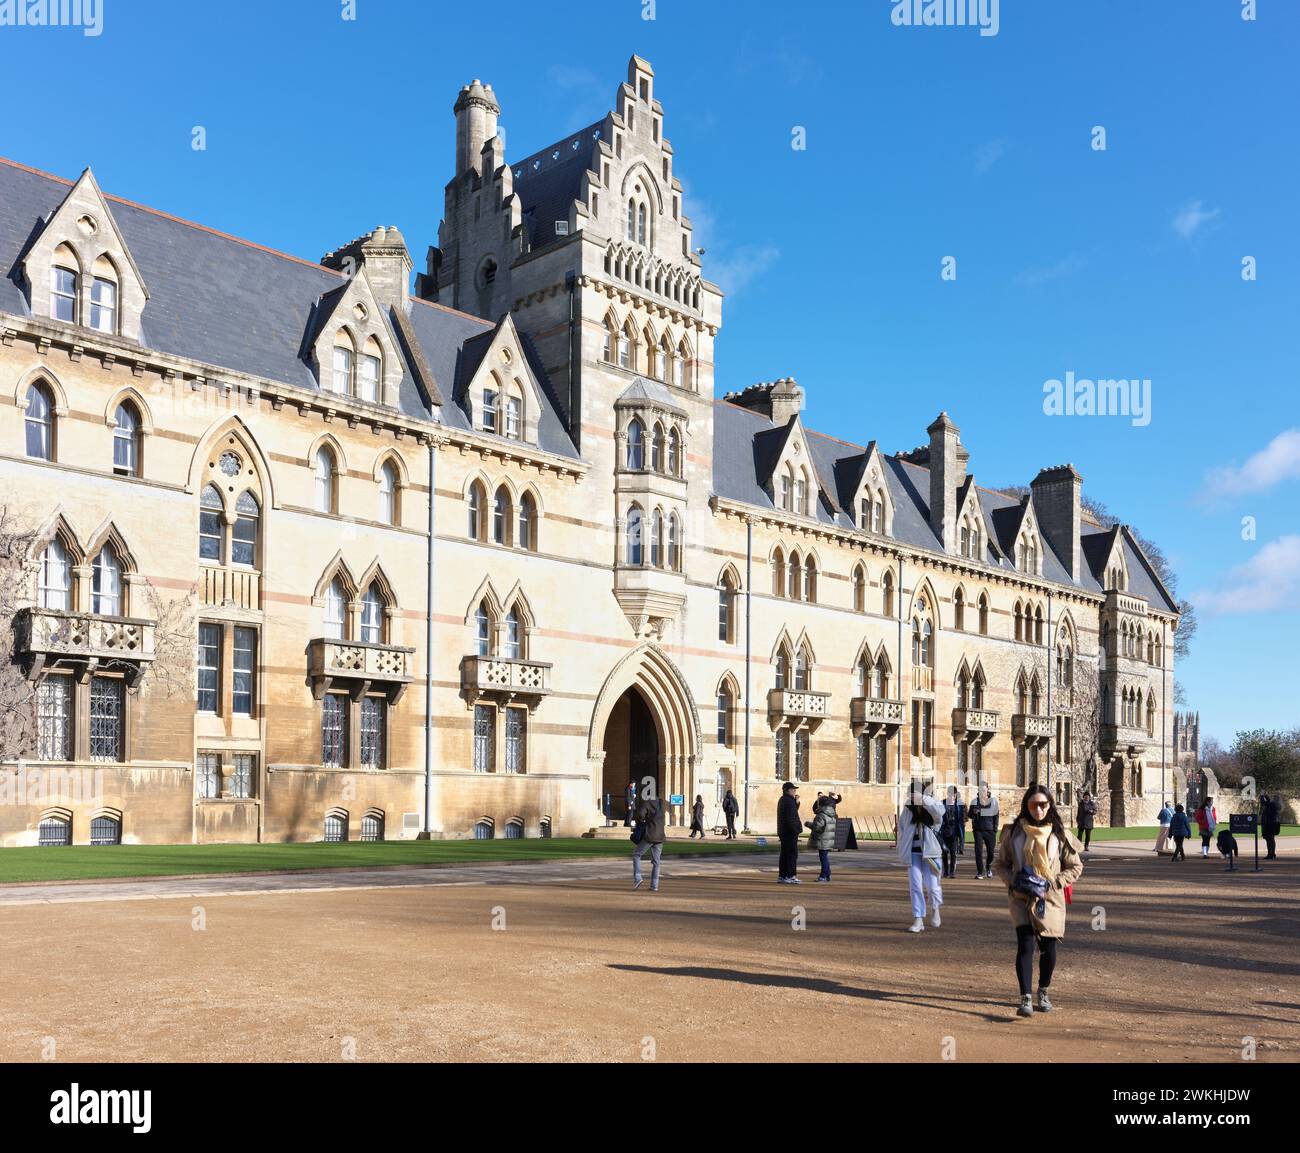 Christ Church College, Université d'Oxford, Angleterre. Banque D'Images